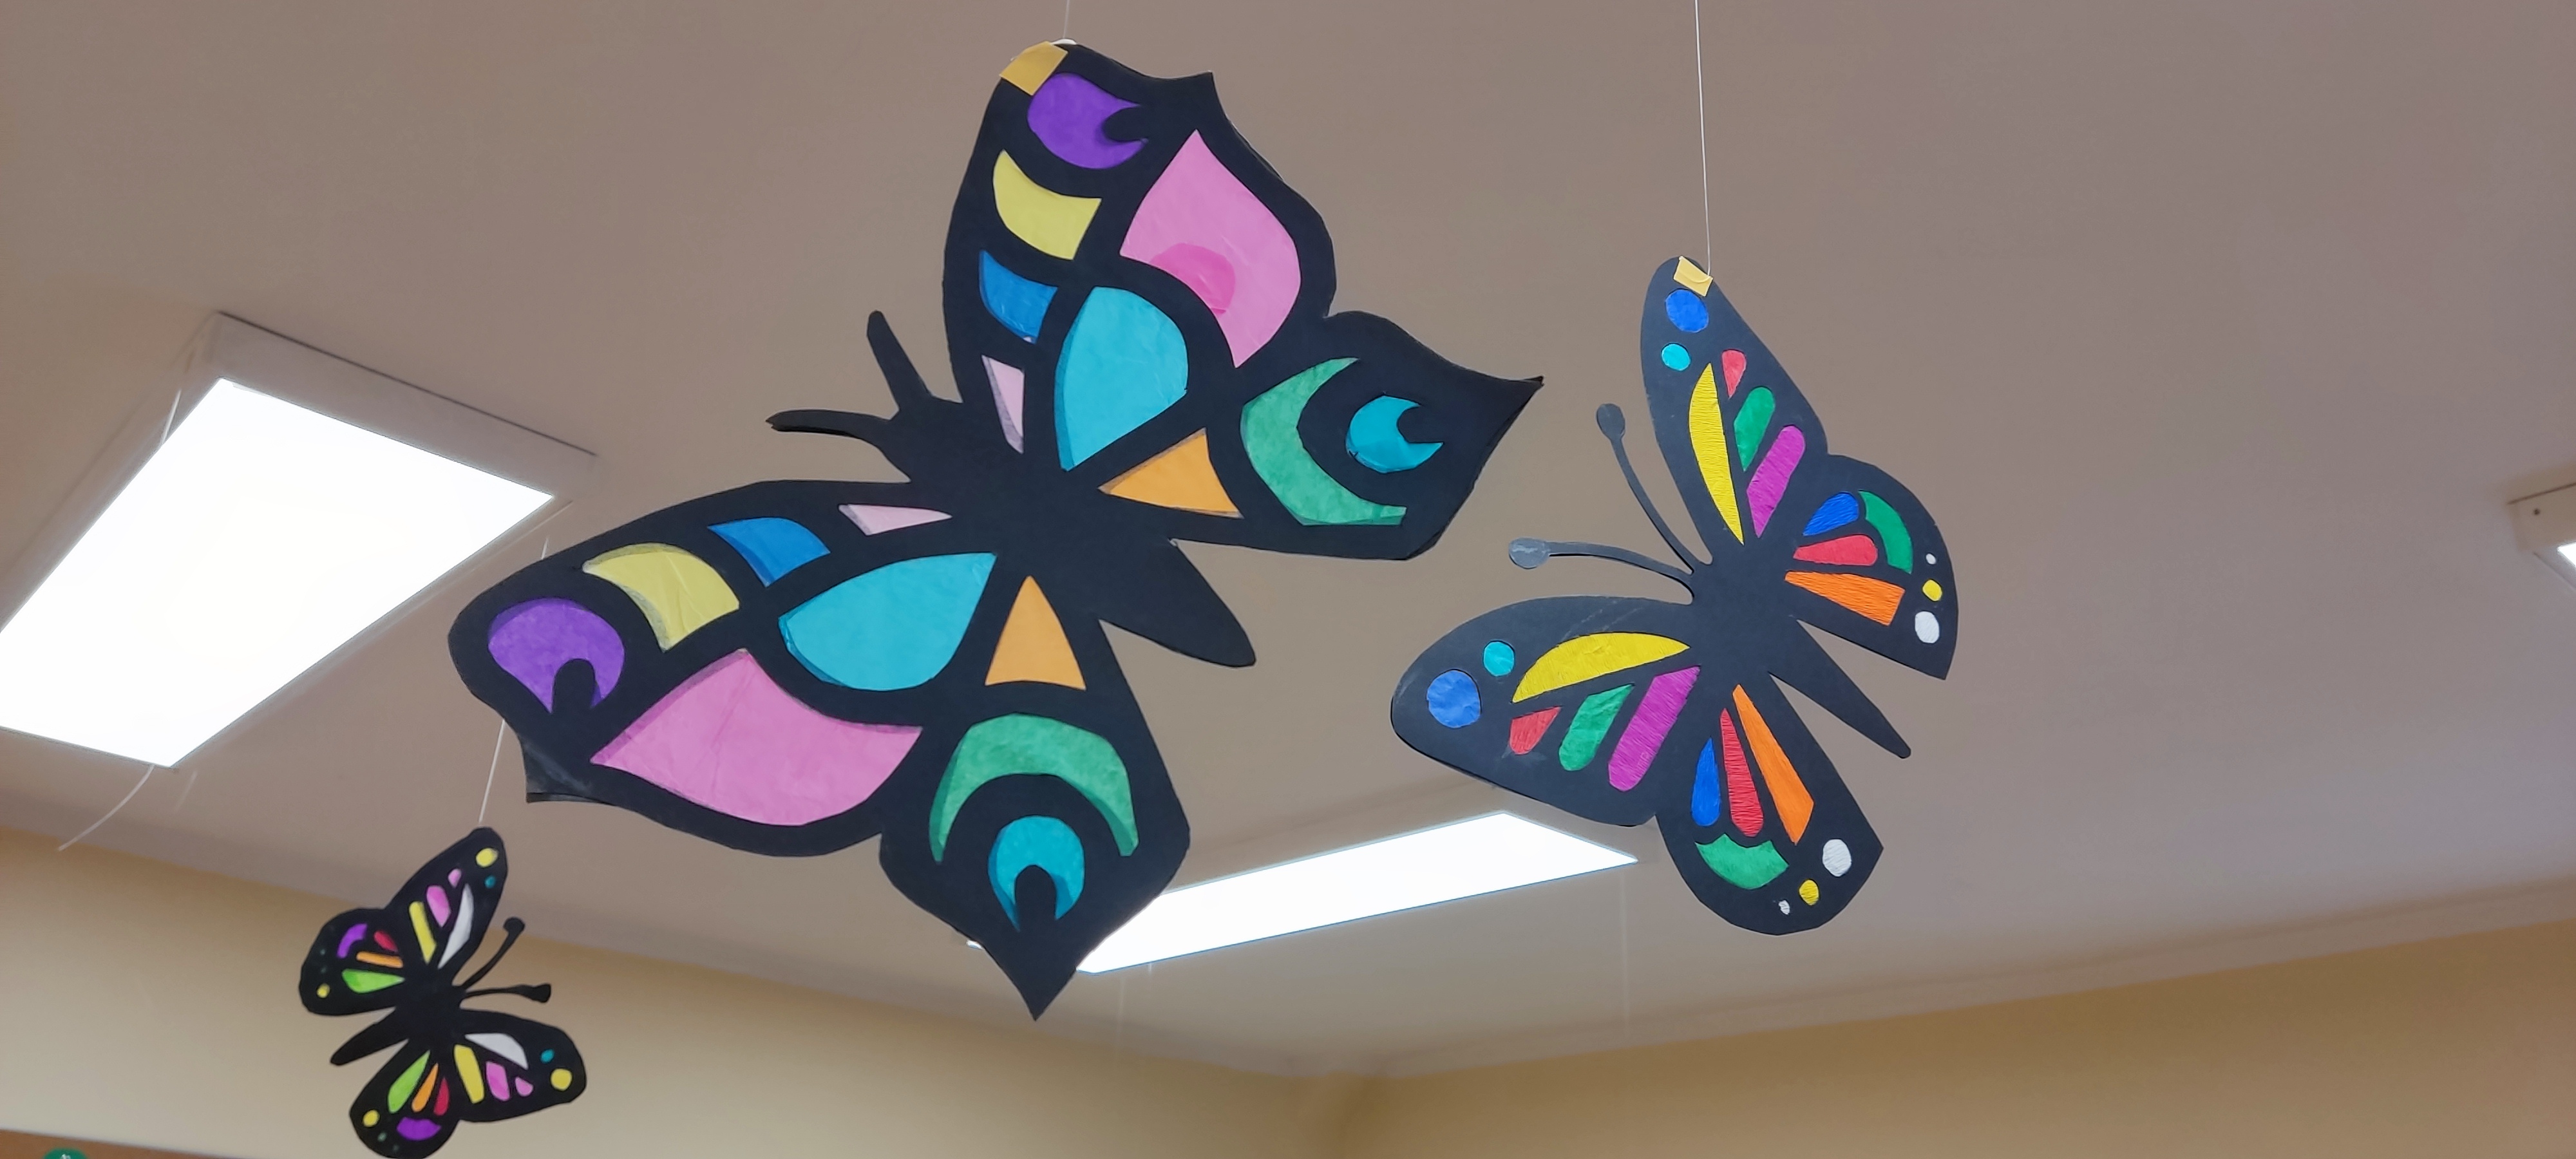 Jakie to szczęście, że w naszej Szkole są motyle!